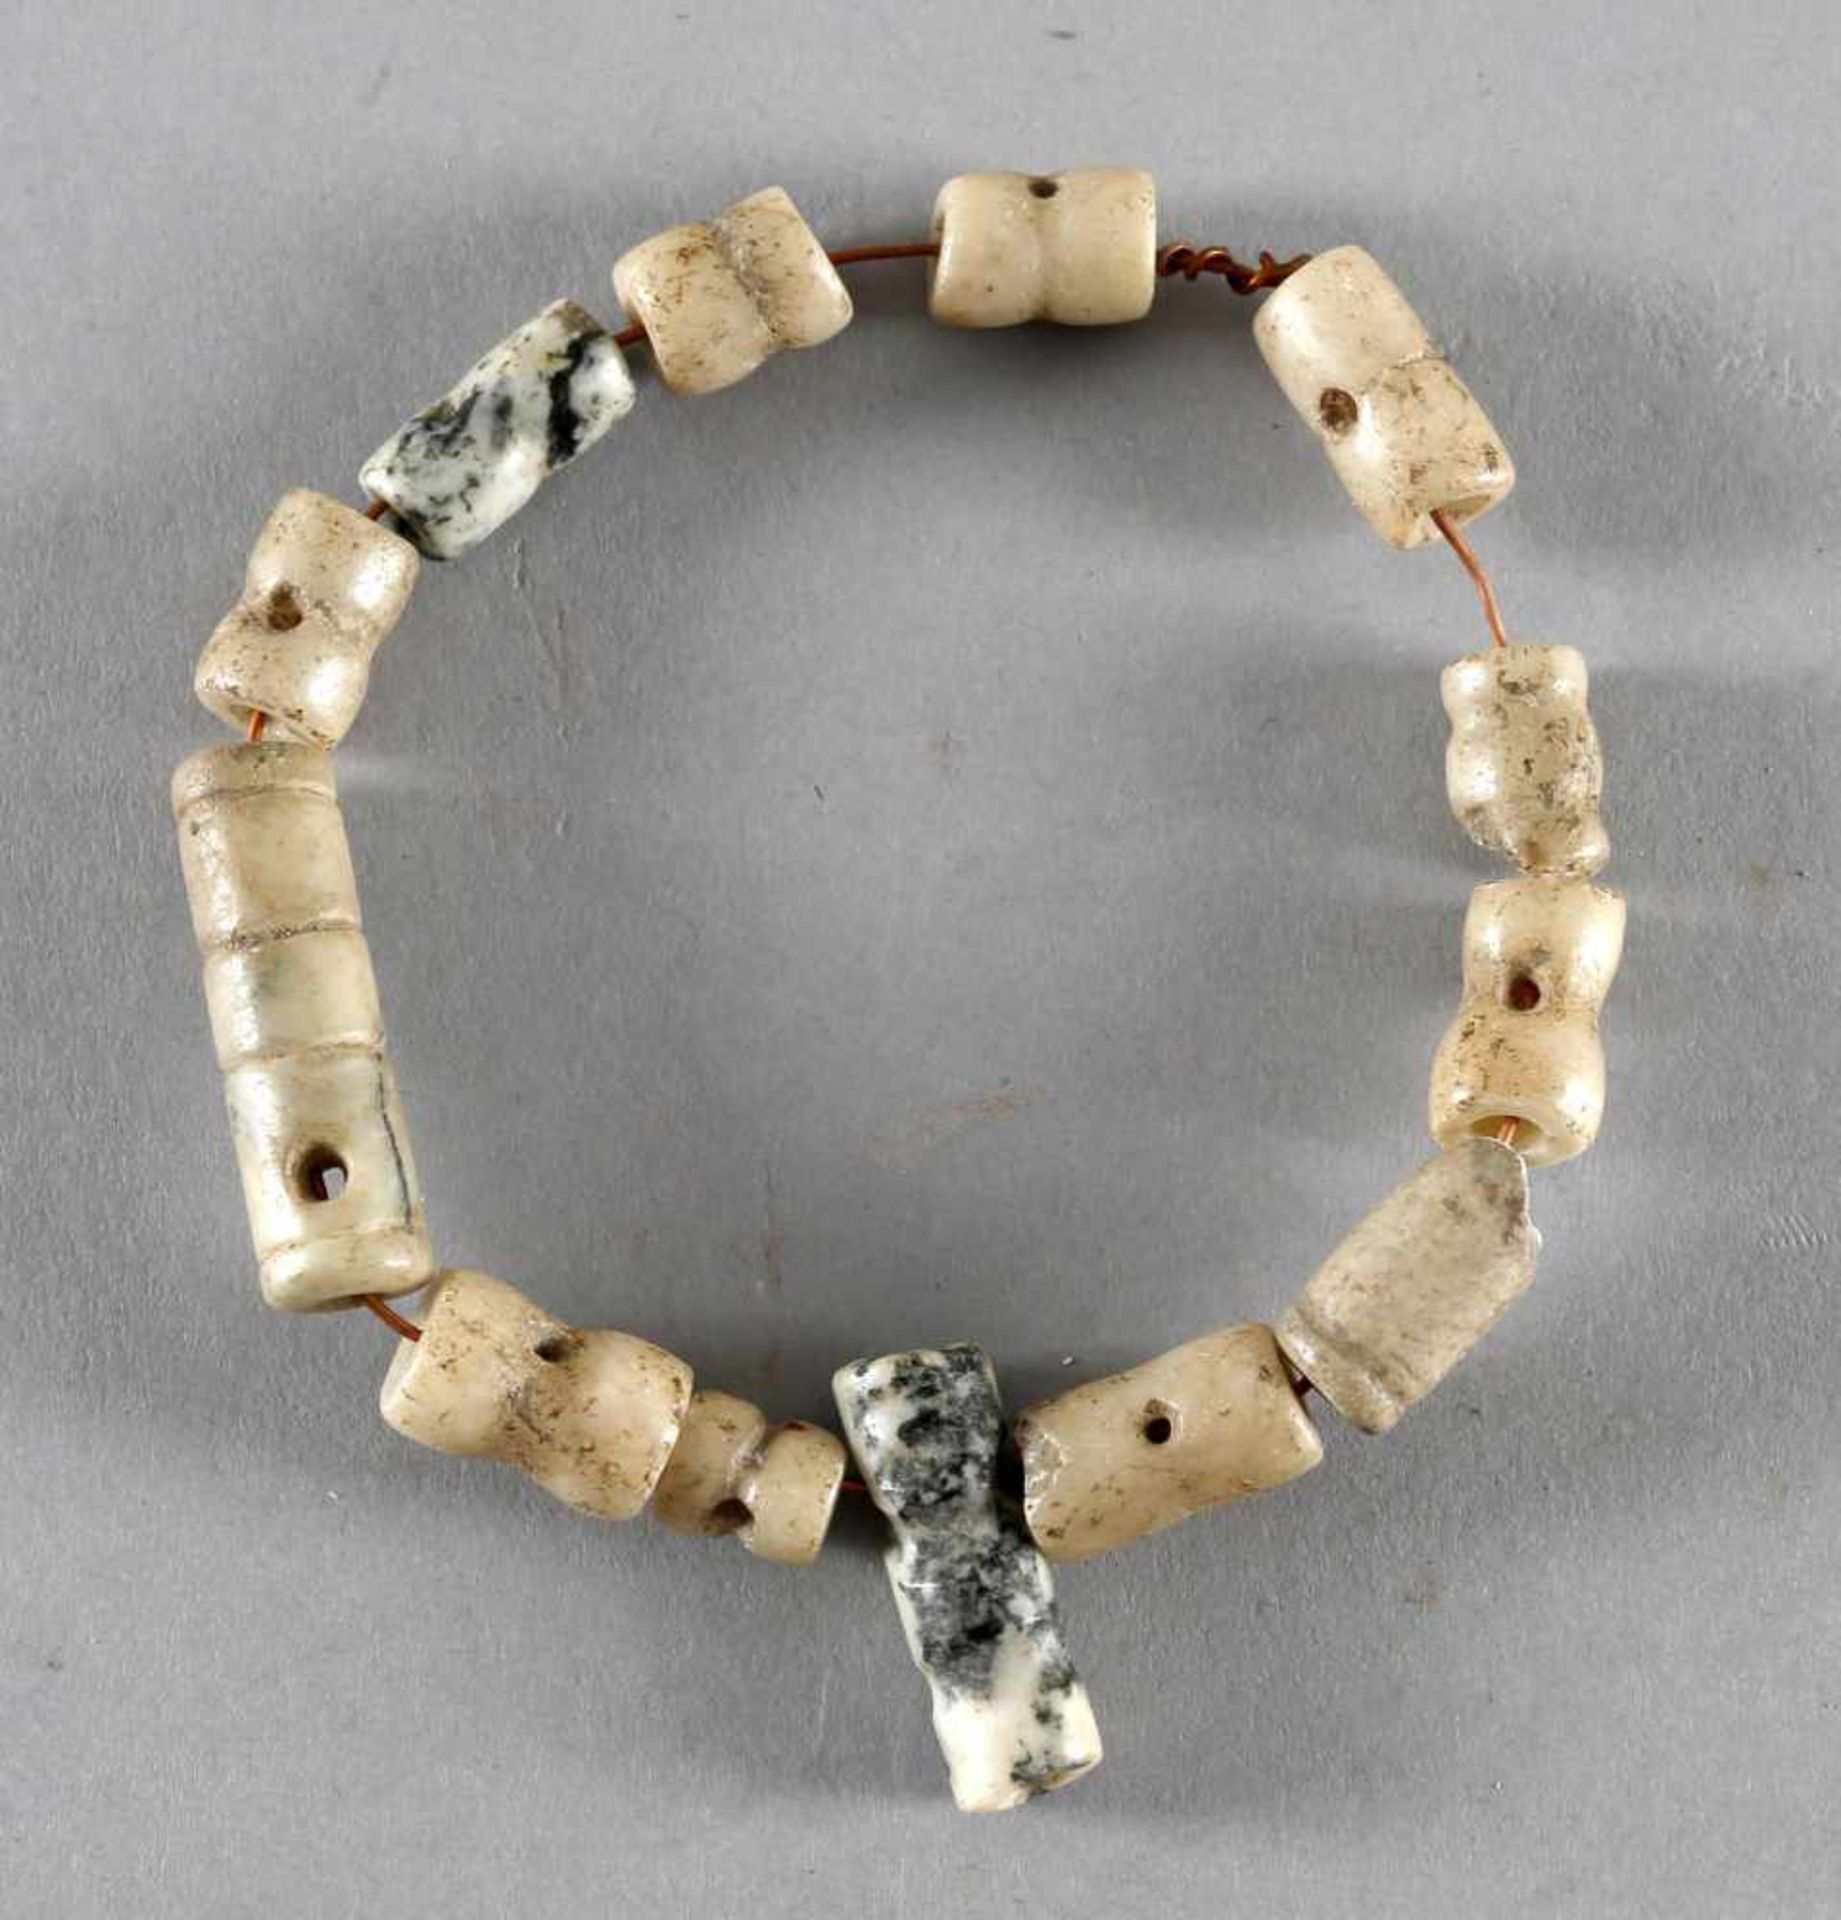 Teile eines Schmucks, Kultur der Taino, Dominikanische Republik, wohl um 1000 - 1500 n. Chr. oder